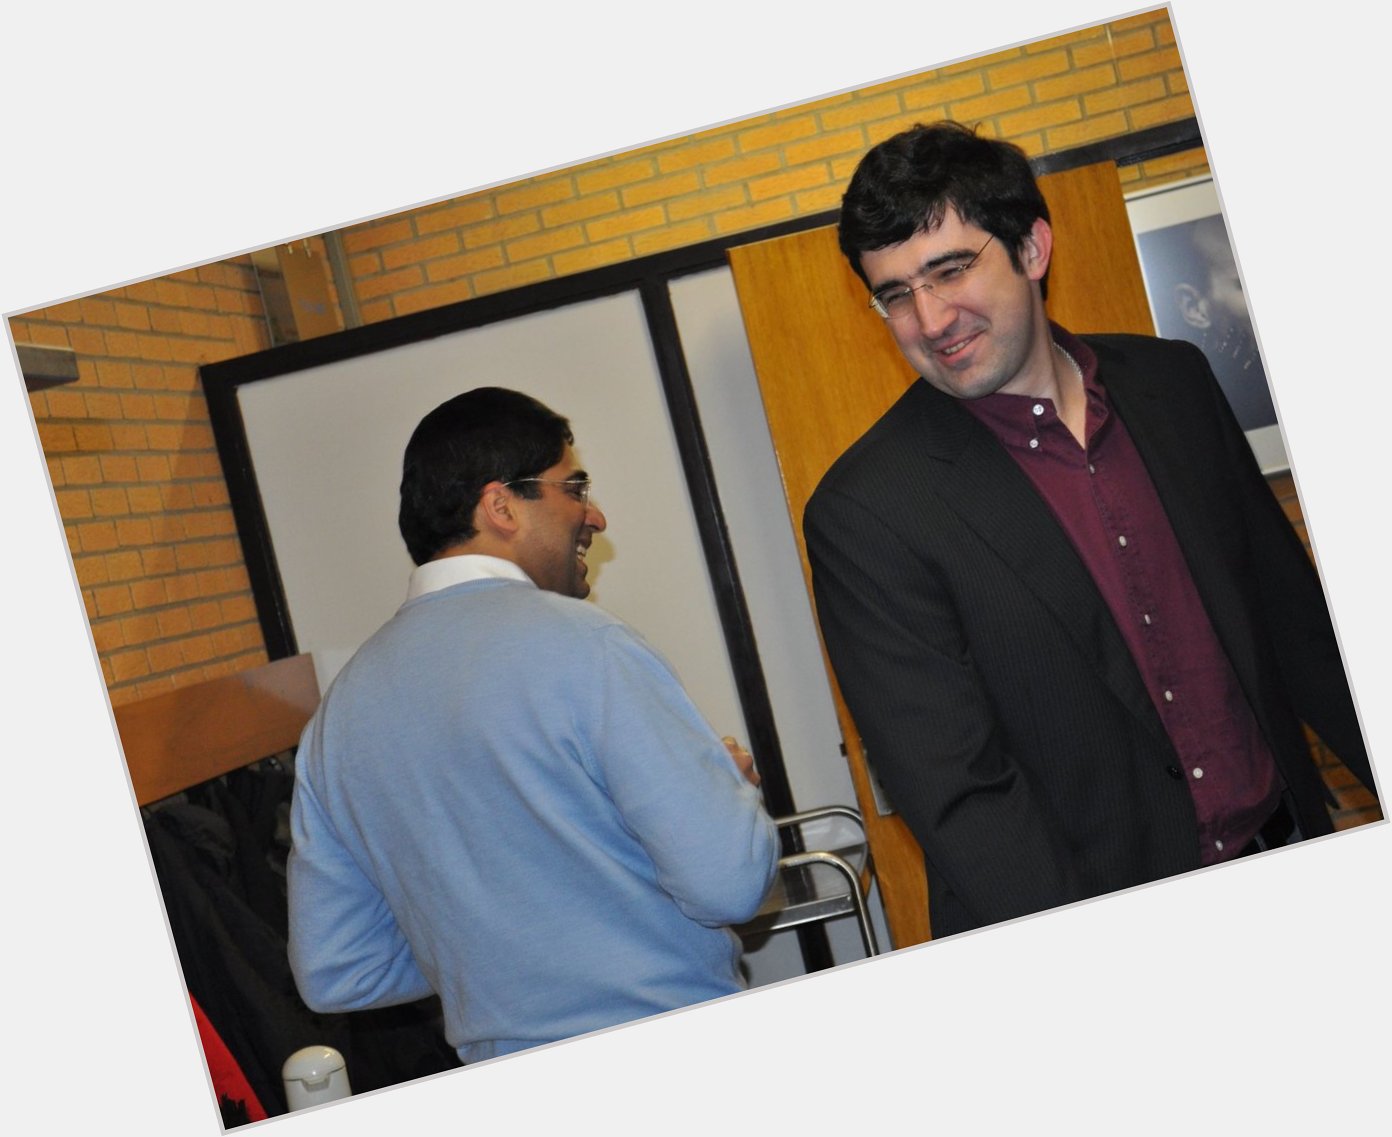 Happy birthday to the OG beast, Vladimir Kramnik.
Two legends, Wijk aan Zee 2011. 